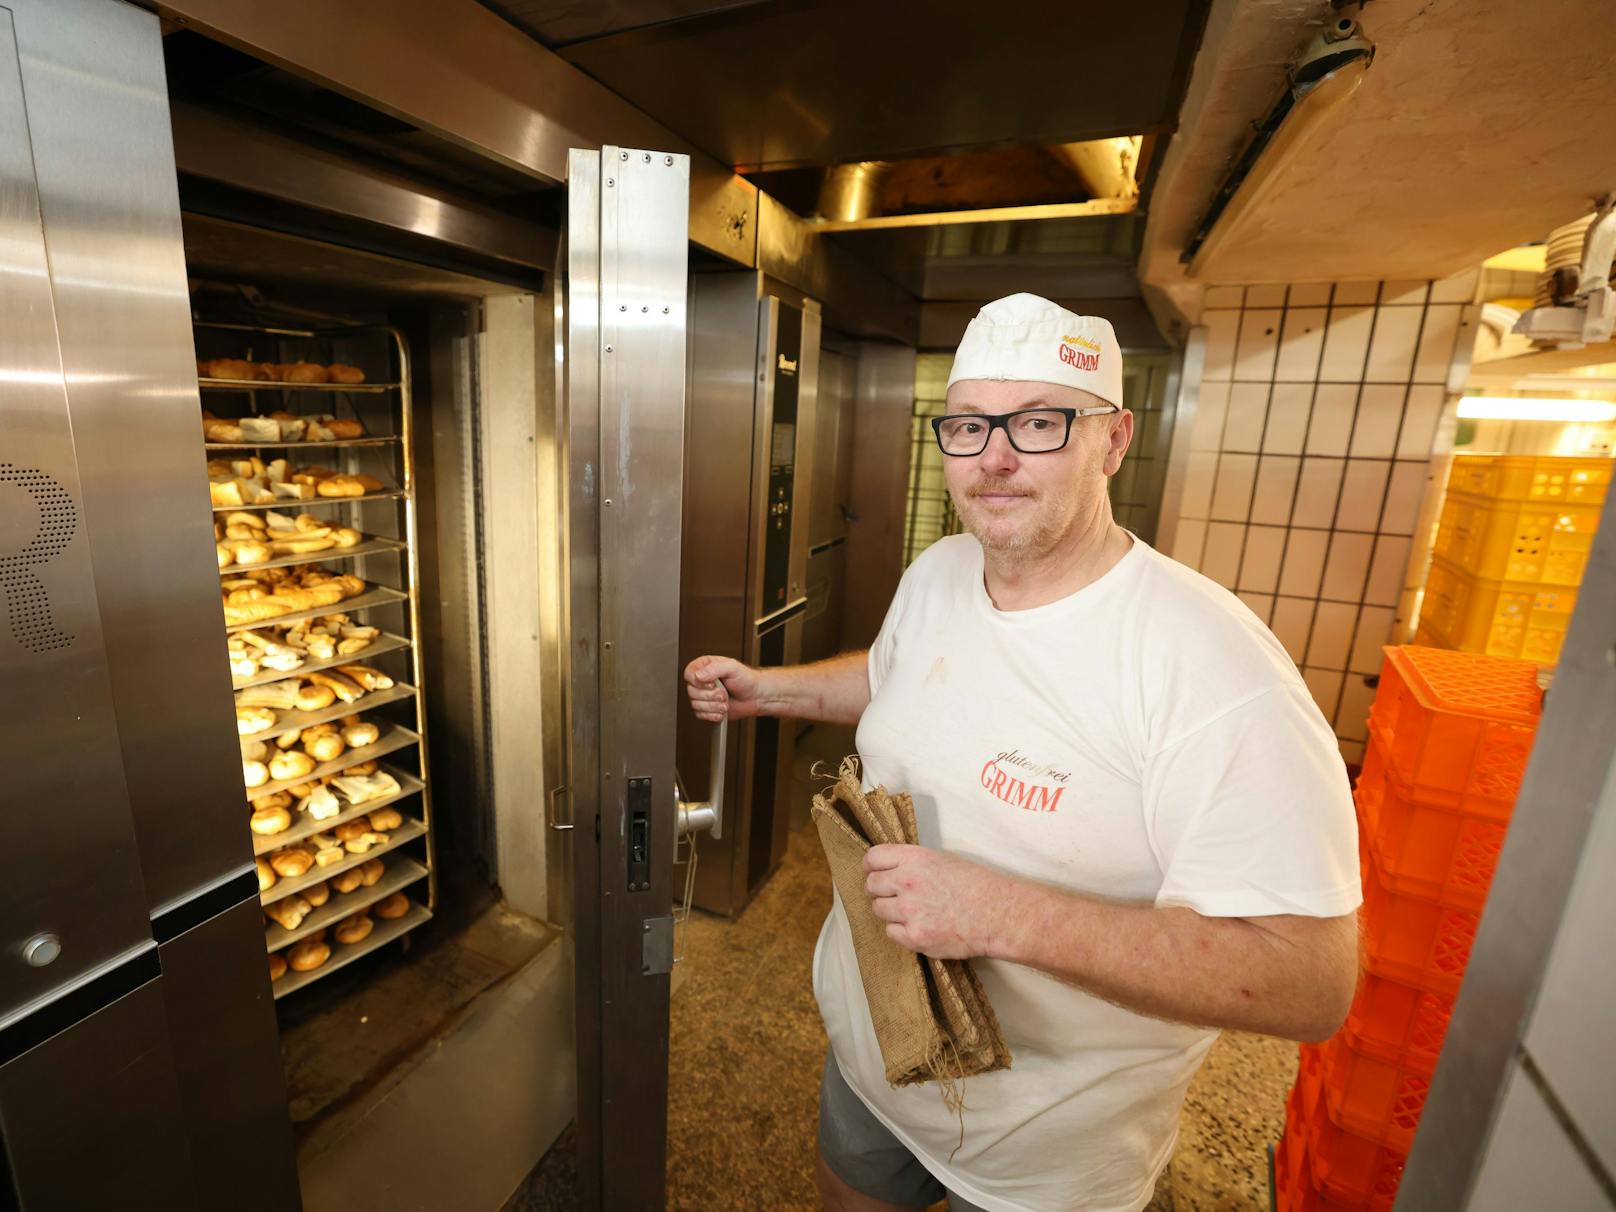 Bäckermeister Andreas Maderna hat am Plafond eine "verkehrte Fußbodenheizung" installiert. Mit der Wärme vom Brot beheizt er sein Geschäft und die darüber liegende Wohnung.